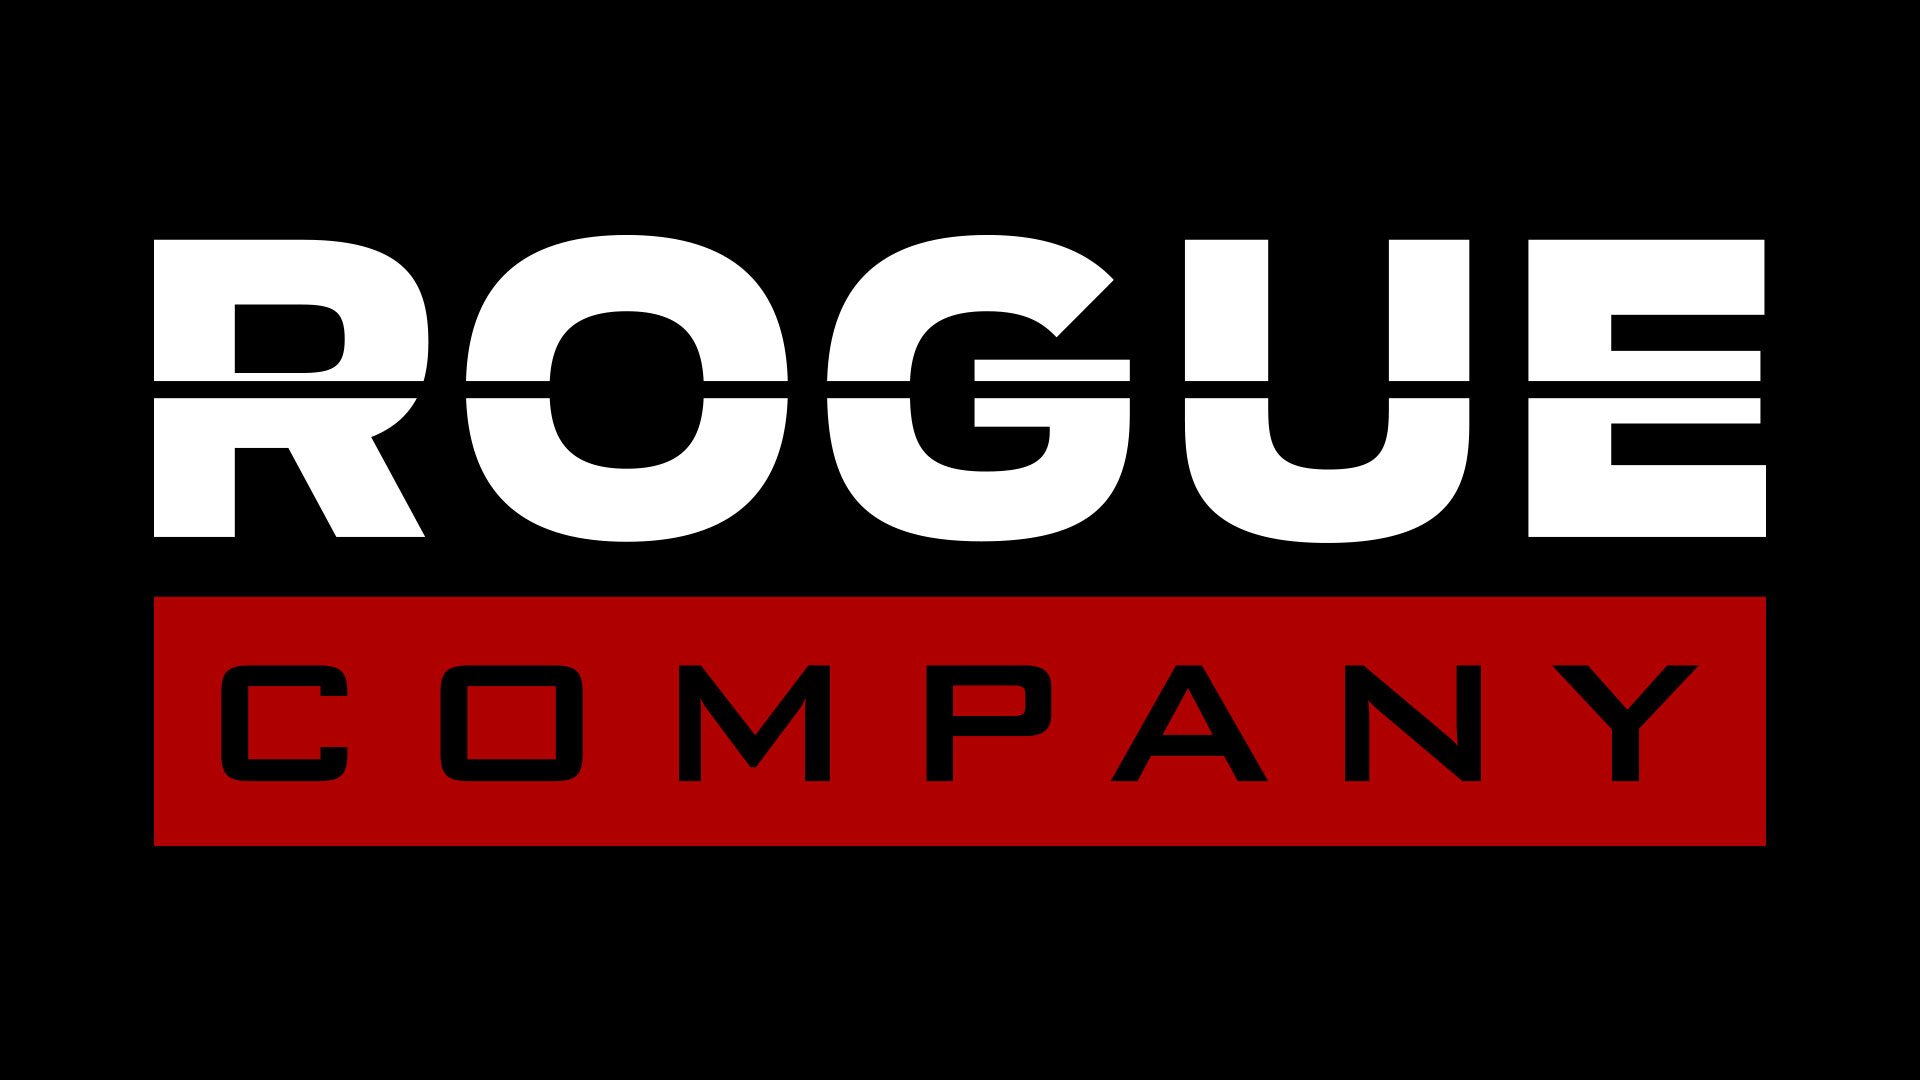 Rogue Company annunciato per Nintendo Switch